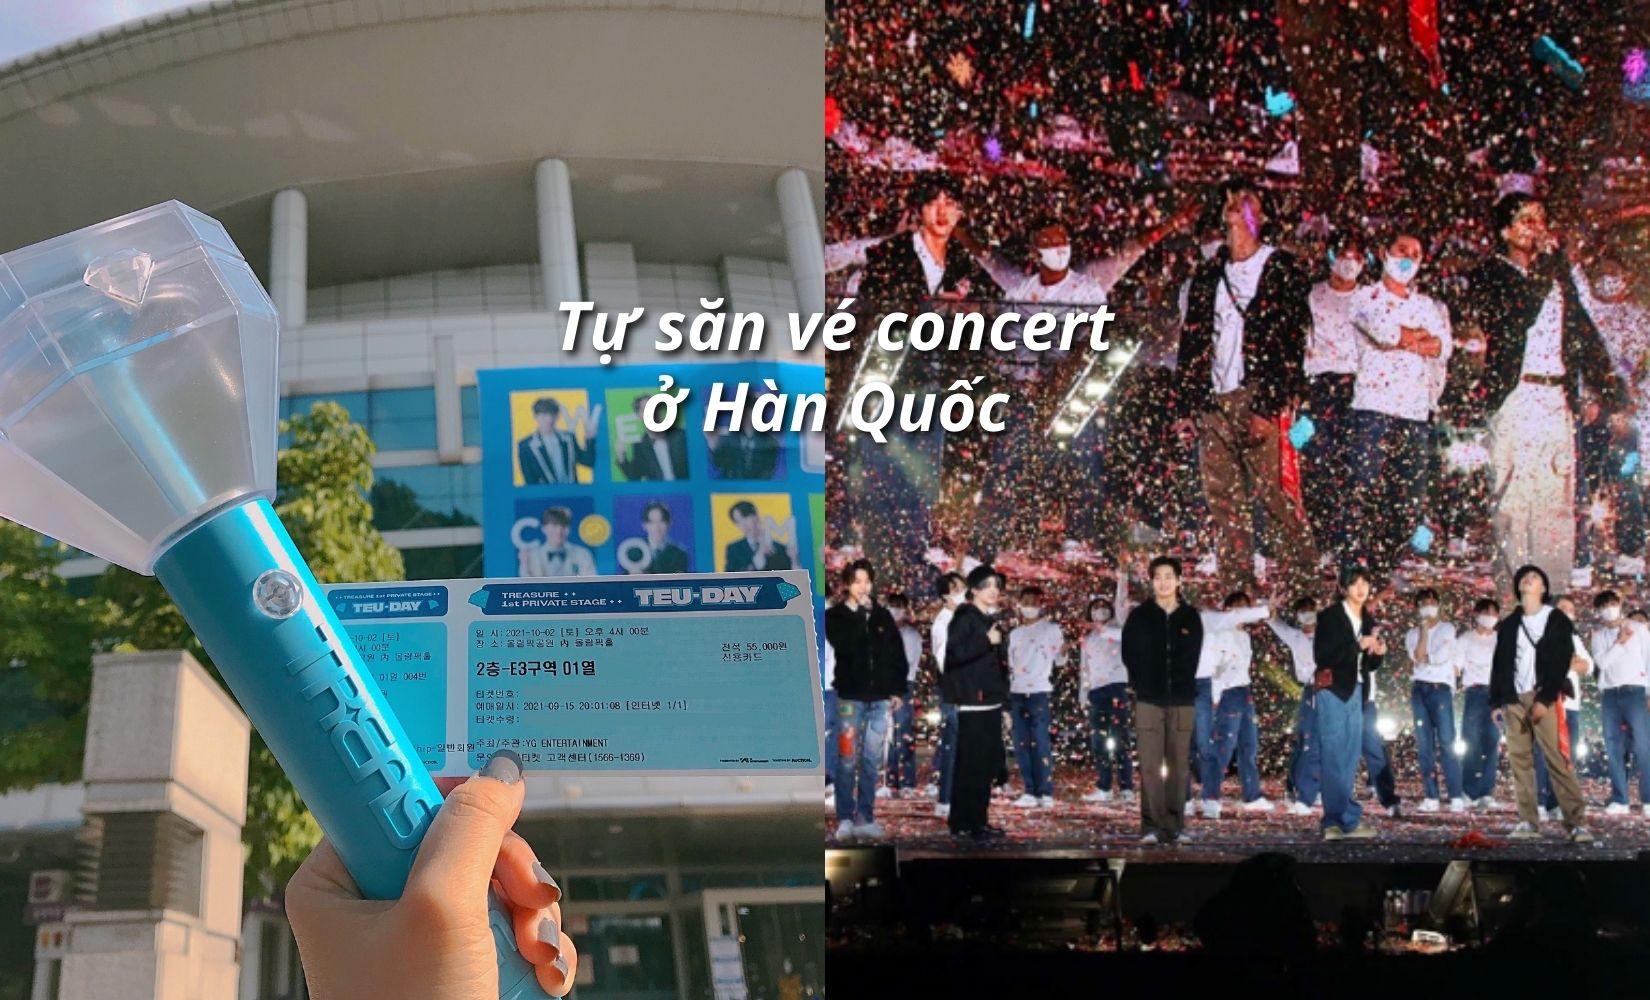 Tổng hợp bí kíp tự mua vé concert ở Hàn: Đảm bảo không bao giờ trượt! 